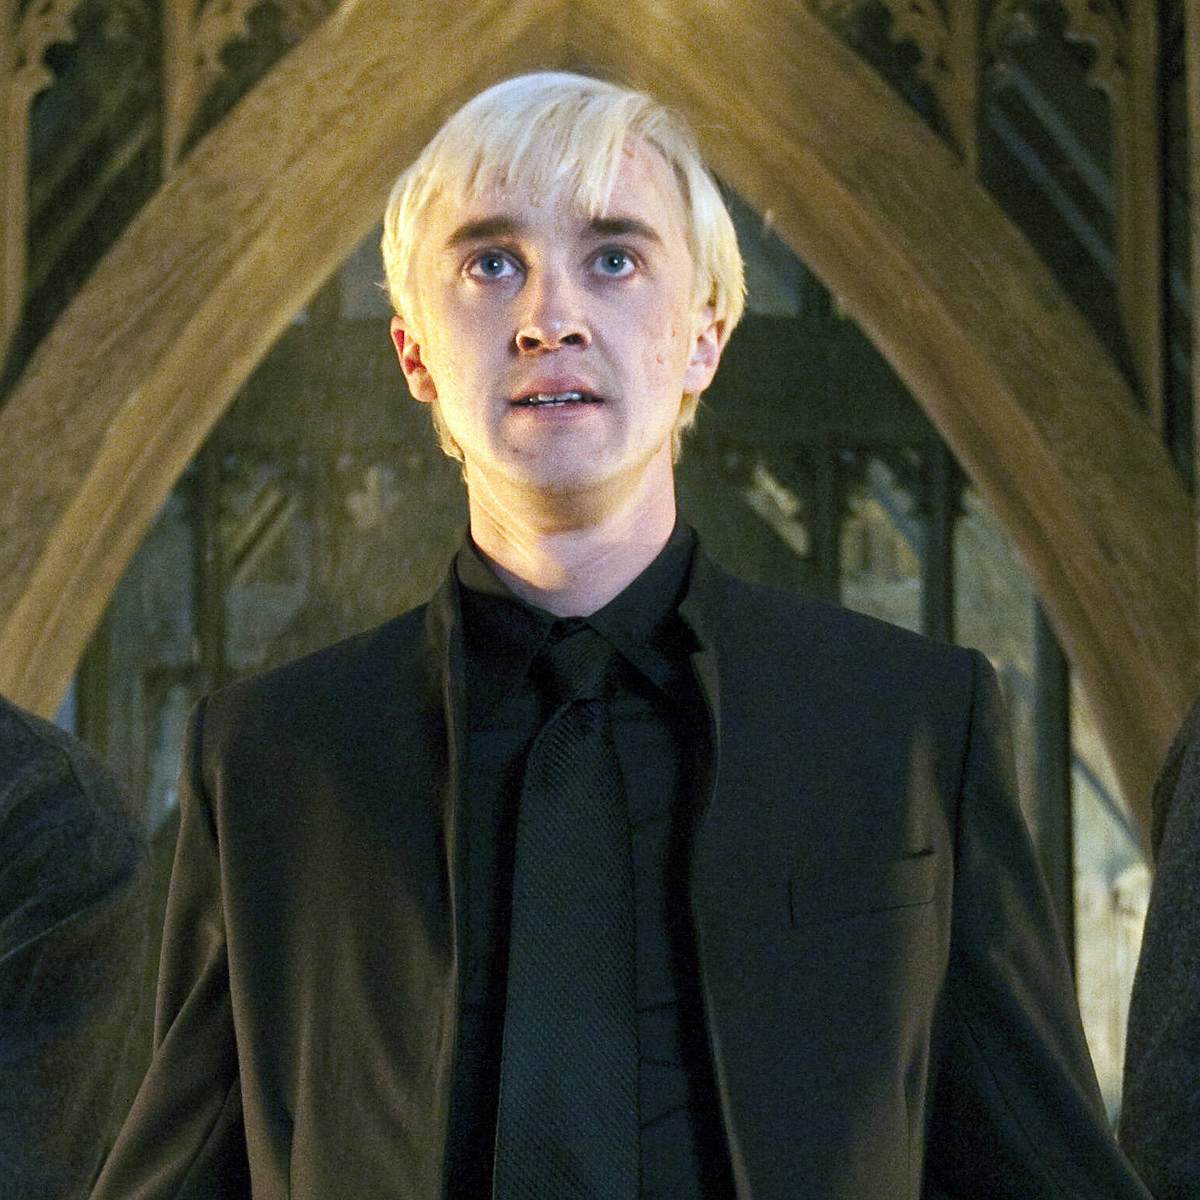 Böse Figuren, die allen leid tun: Draco Malfoy